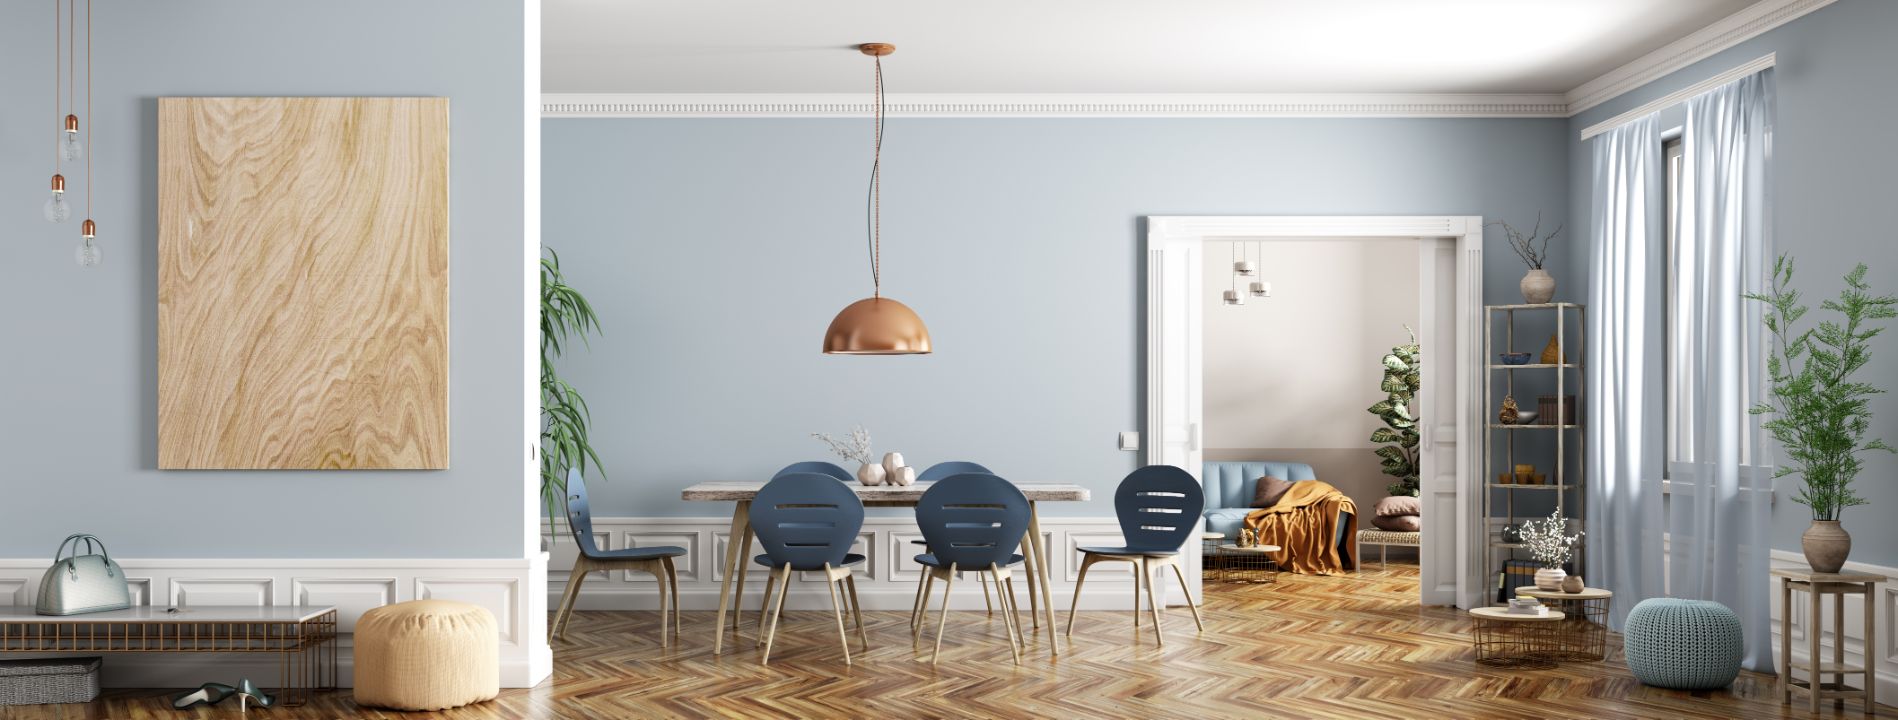 Moderne Raumgestaltung für das Wohnzimmer mit schönen Farben